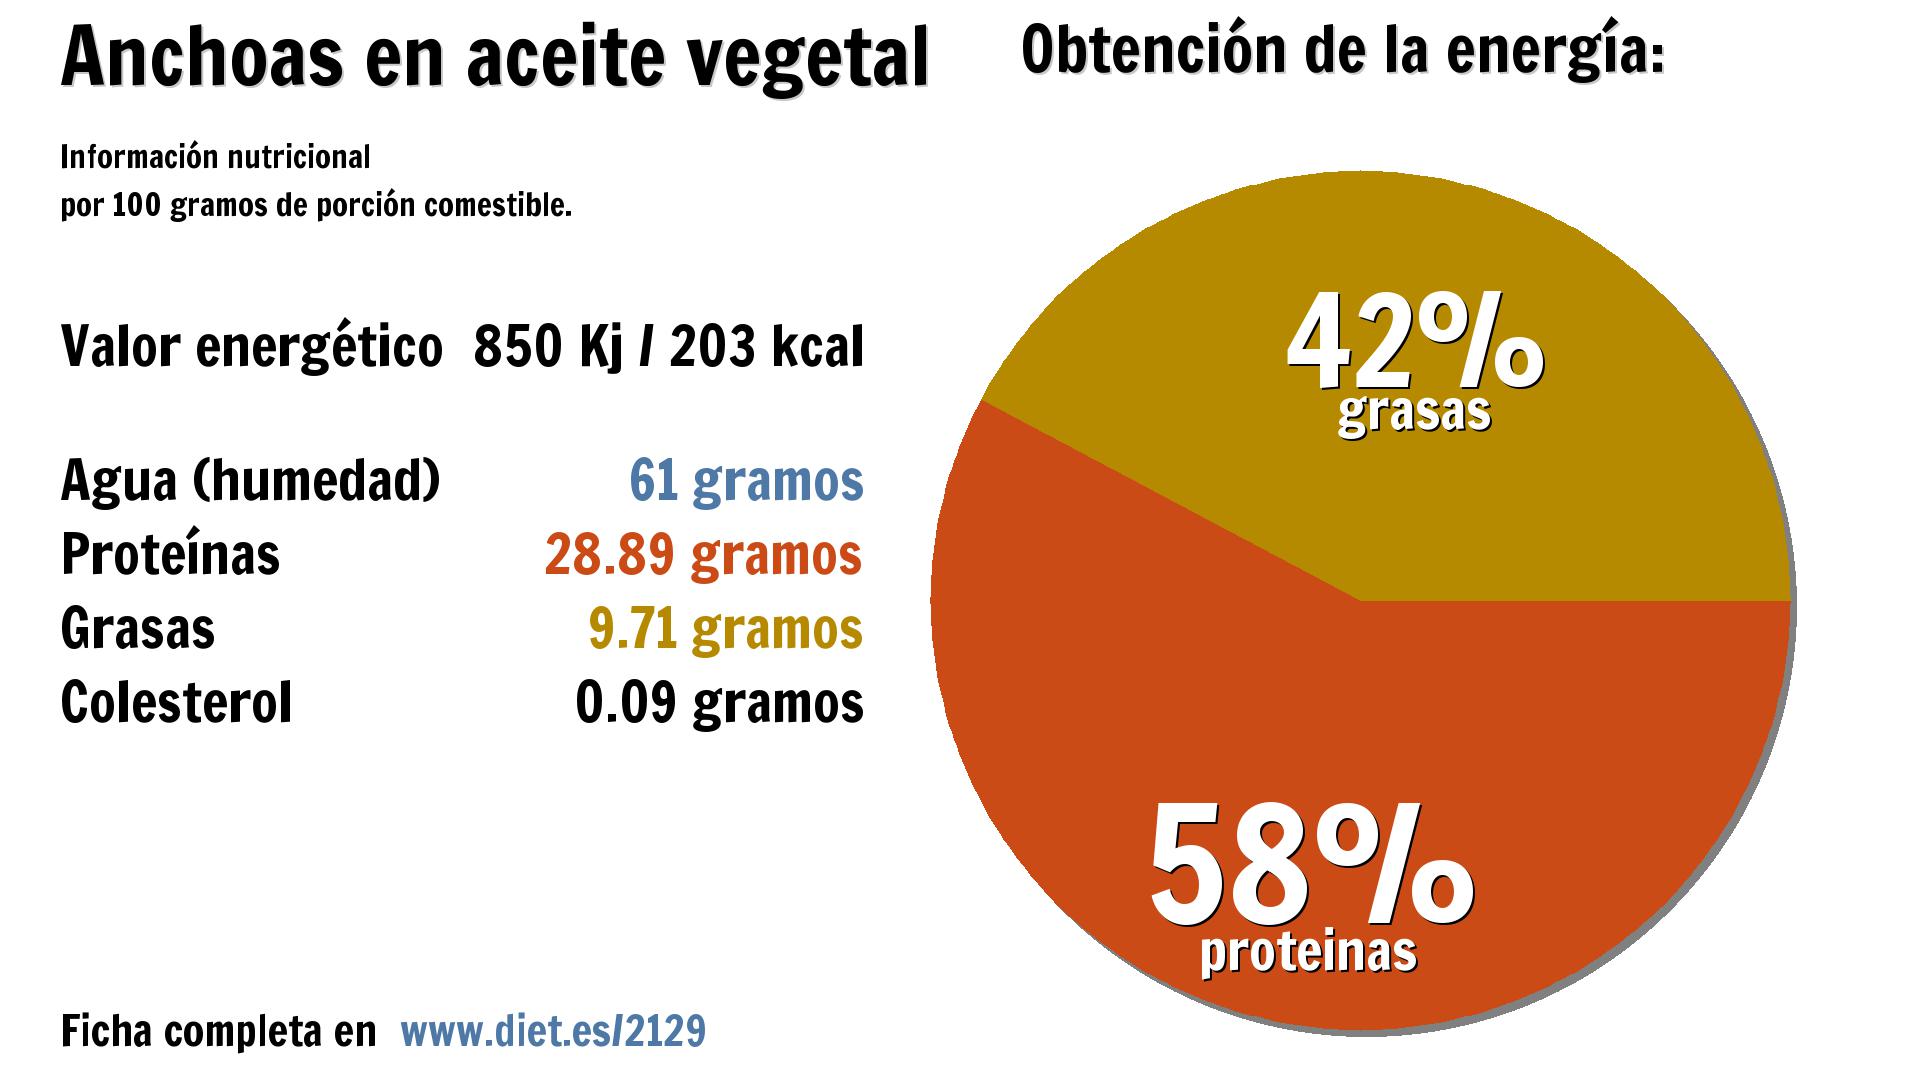 Anchoas en aceite vegetal: energía 850 Kj, agua 61 g., proteínas 29 g. y grasas 10 g.